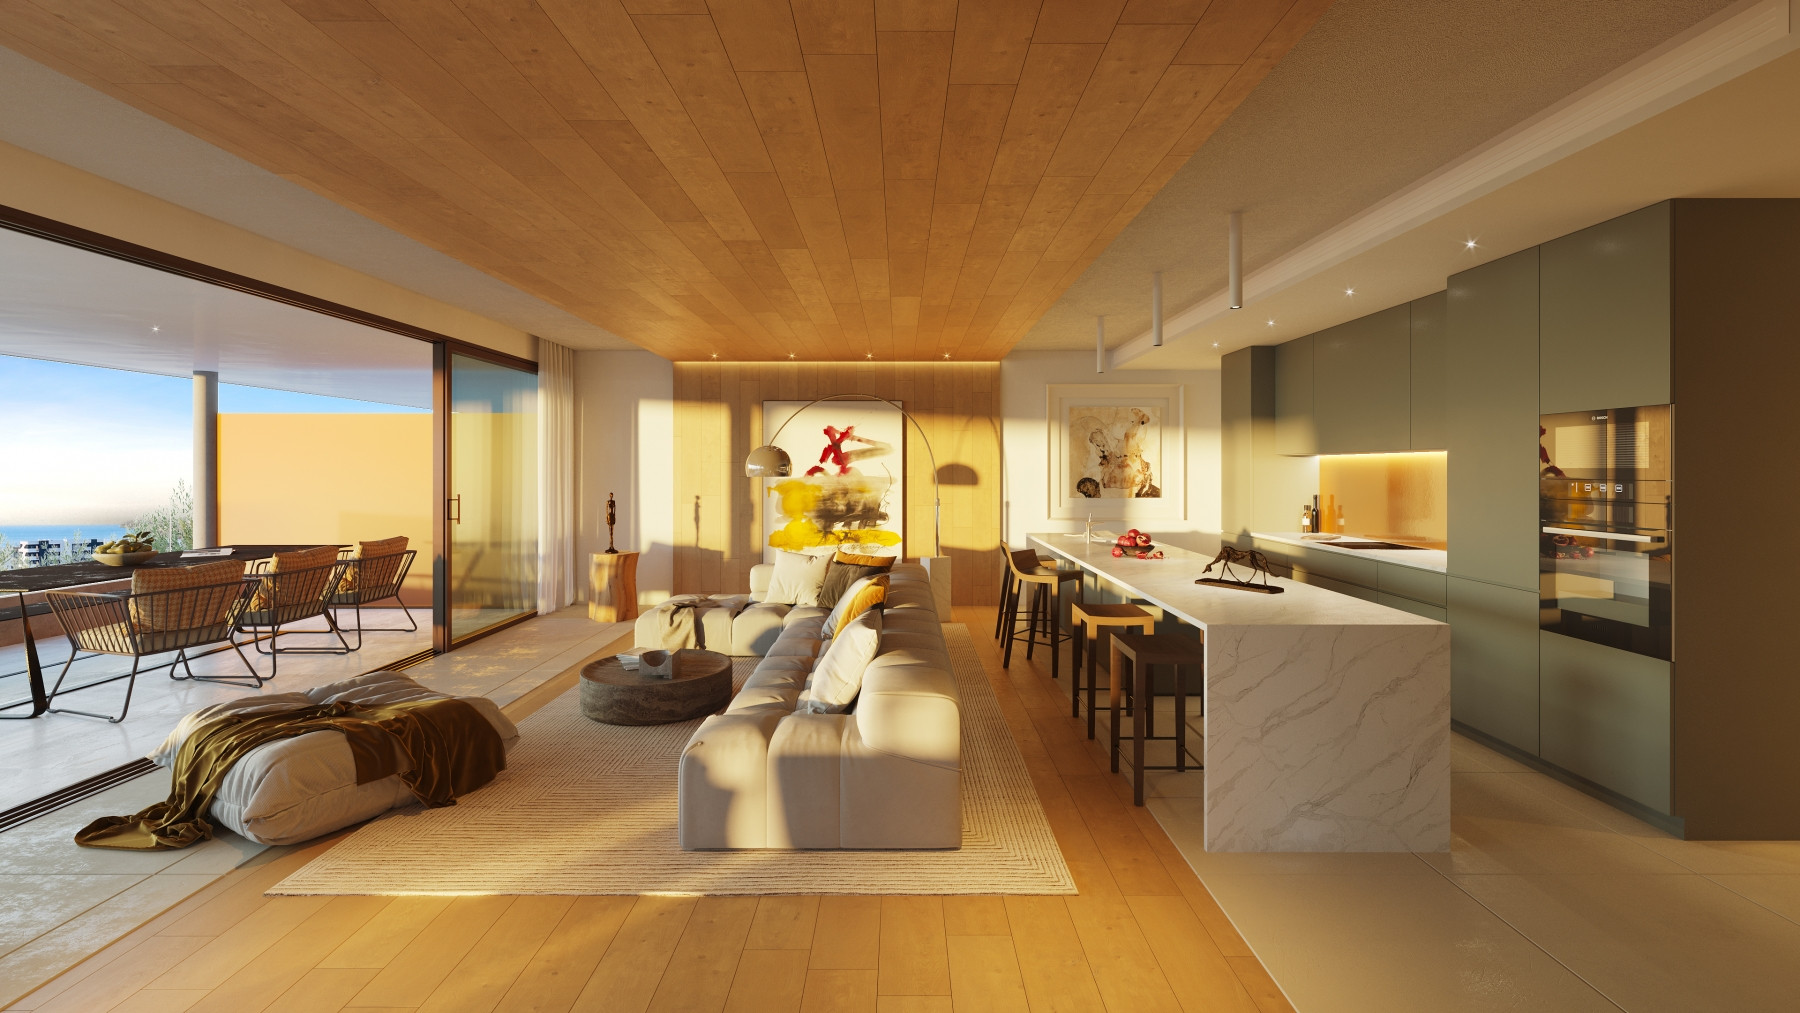 Luxury three bedroom villa with sea views in El Higueron, Fuengirola. | Image 3